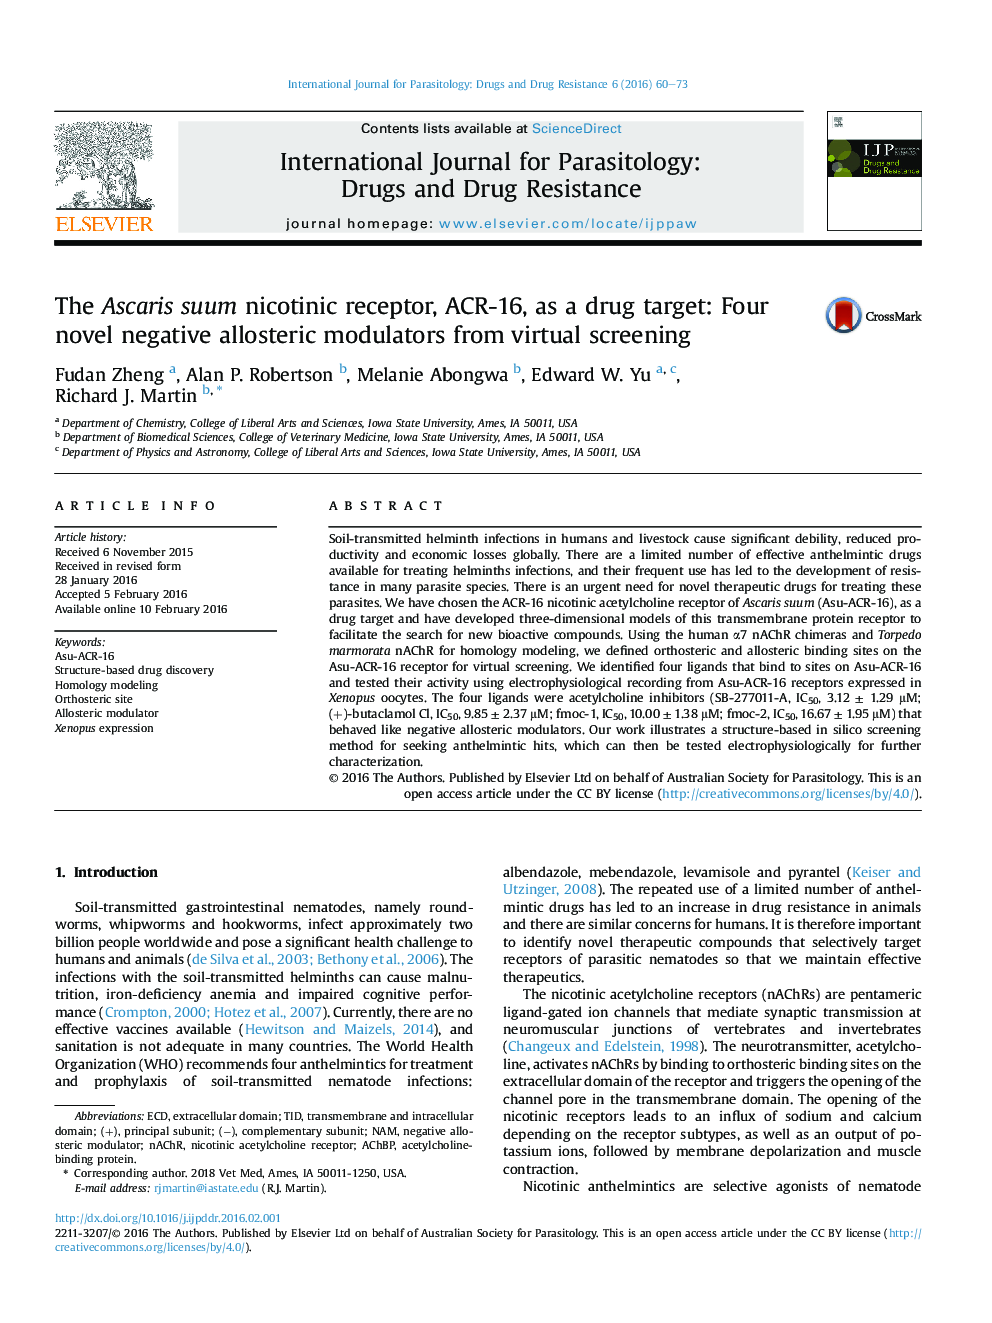 گیرنده نیکوتین suum گونه آسکاریس، ACR-16، به عنوان یک هدف دارویی: چهار تعدیل کننده آلوستریک منفی جدید از غربالگری مجازی